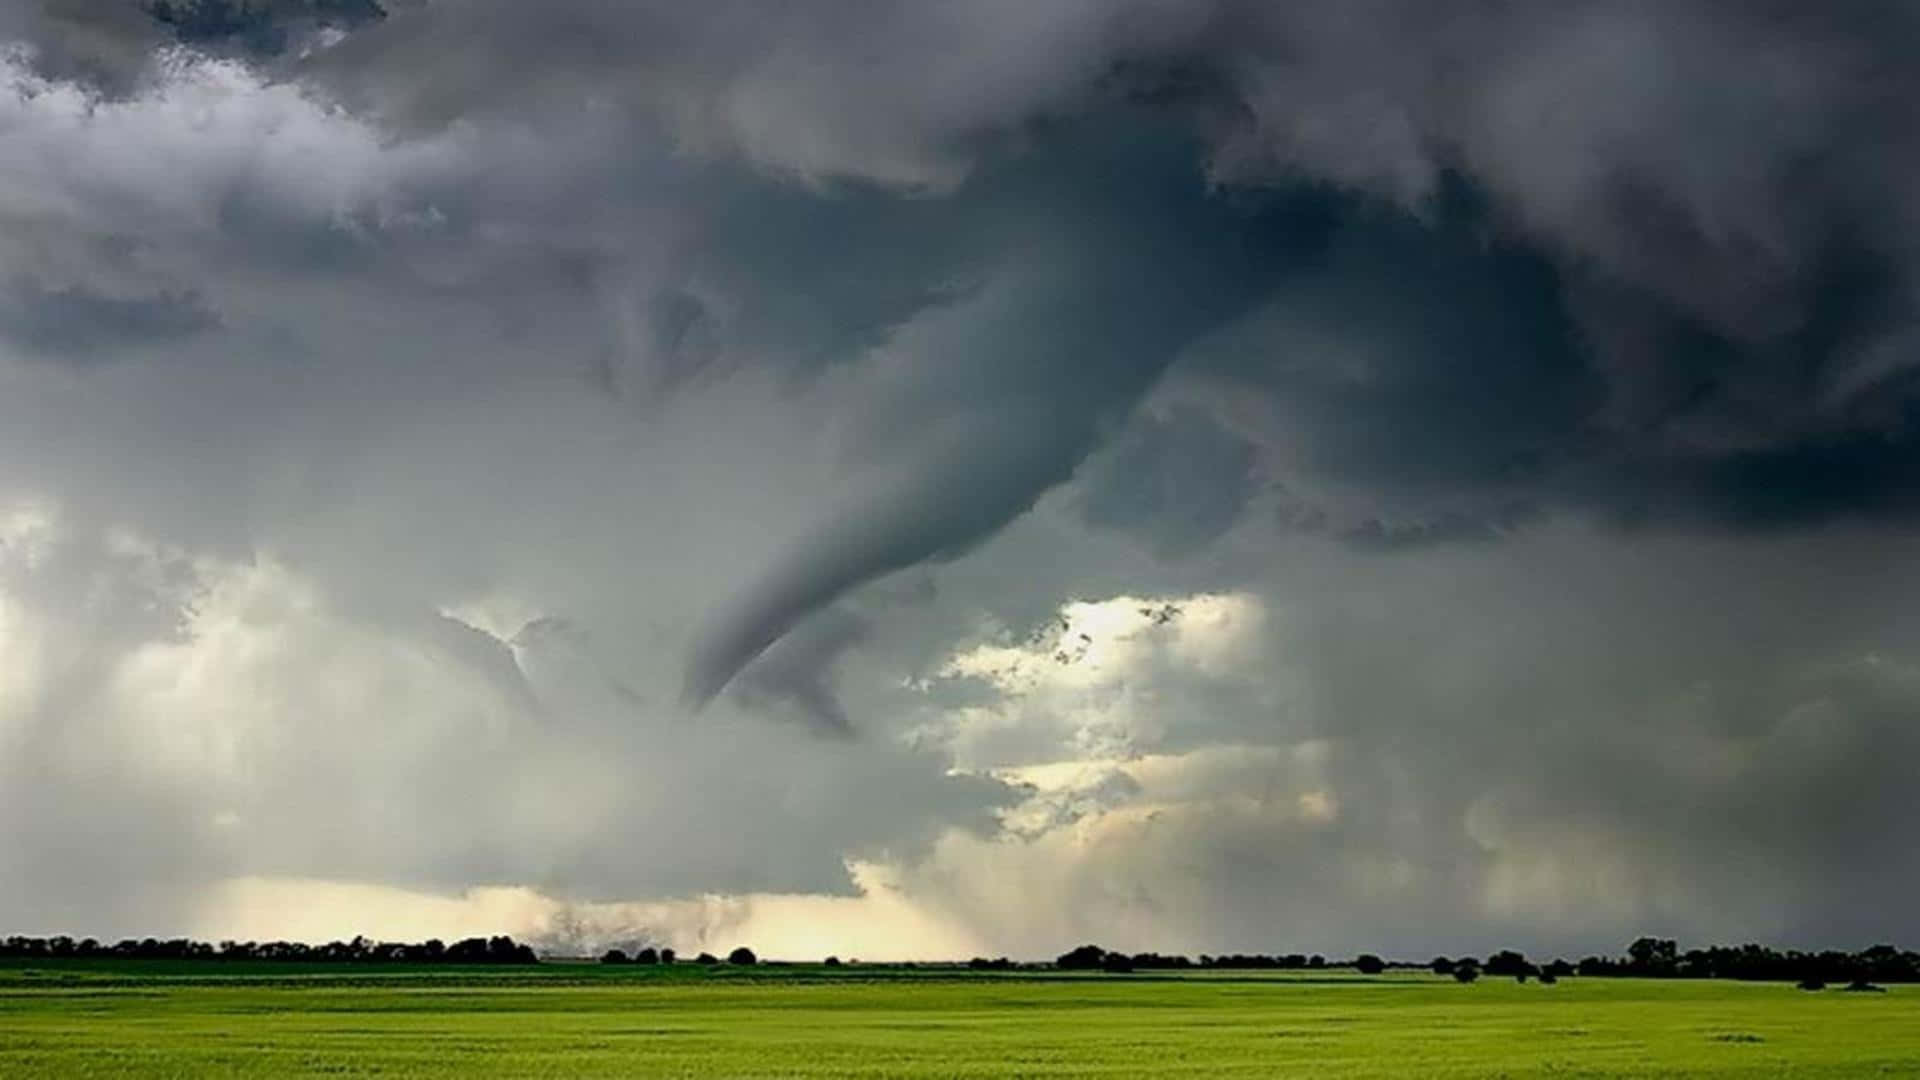 A powerful tornado sweeps across the vast open landscape